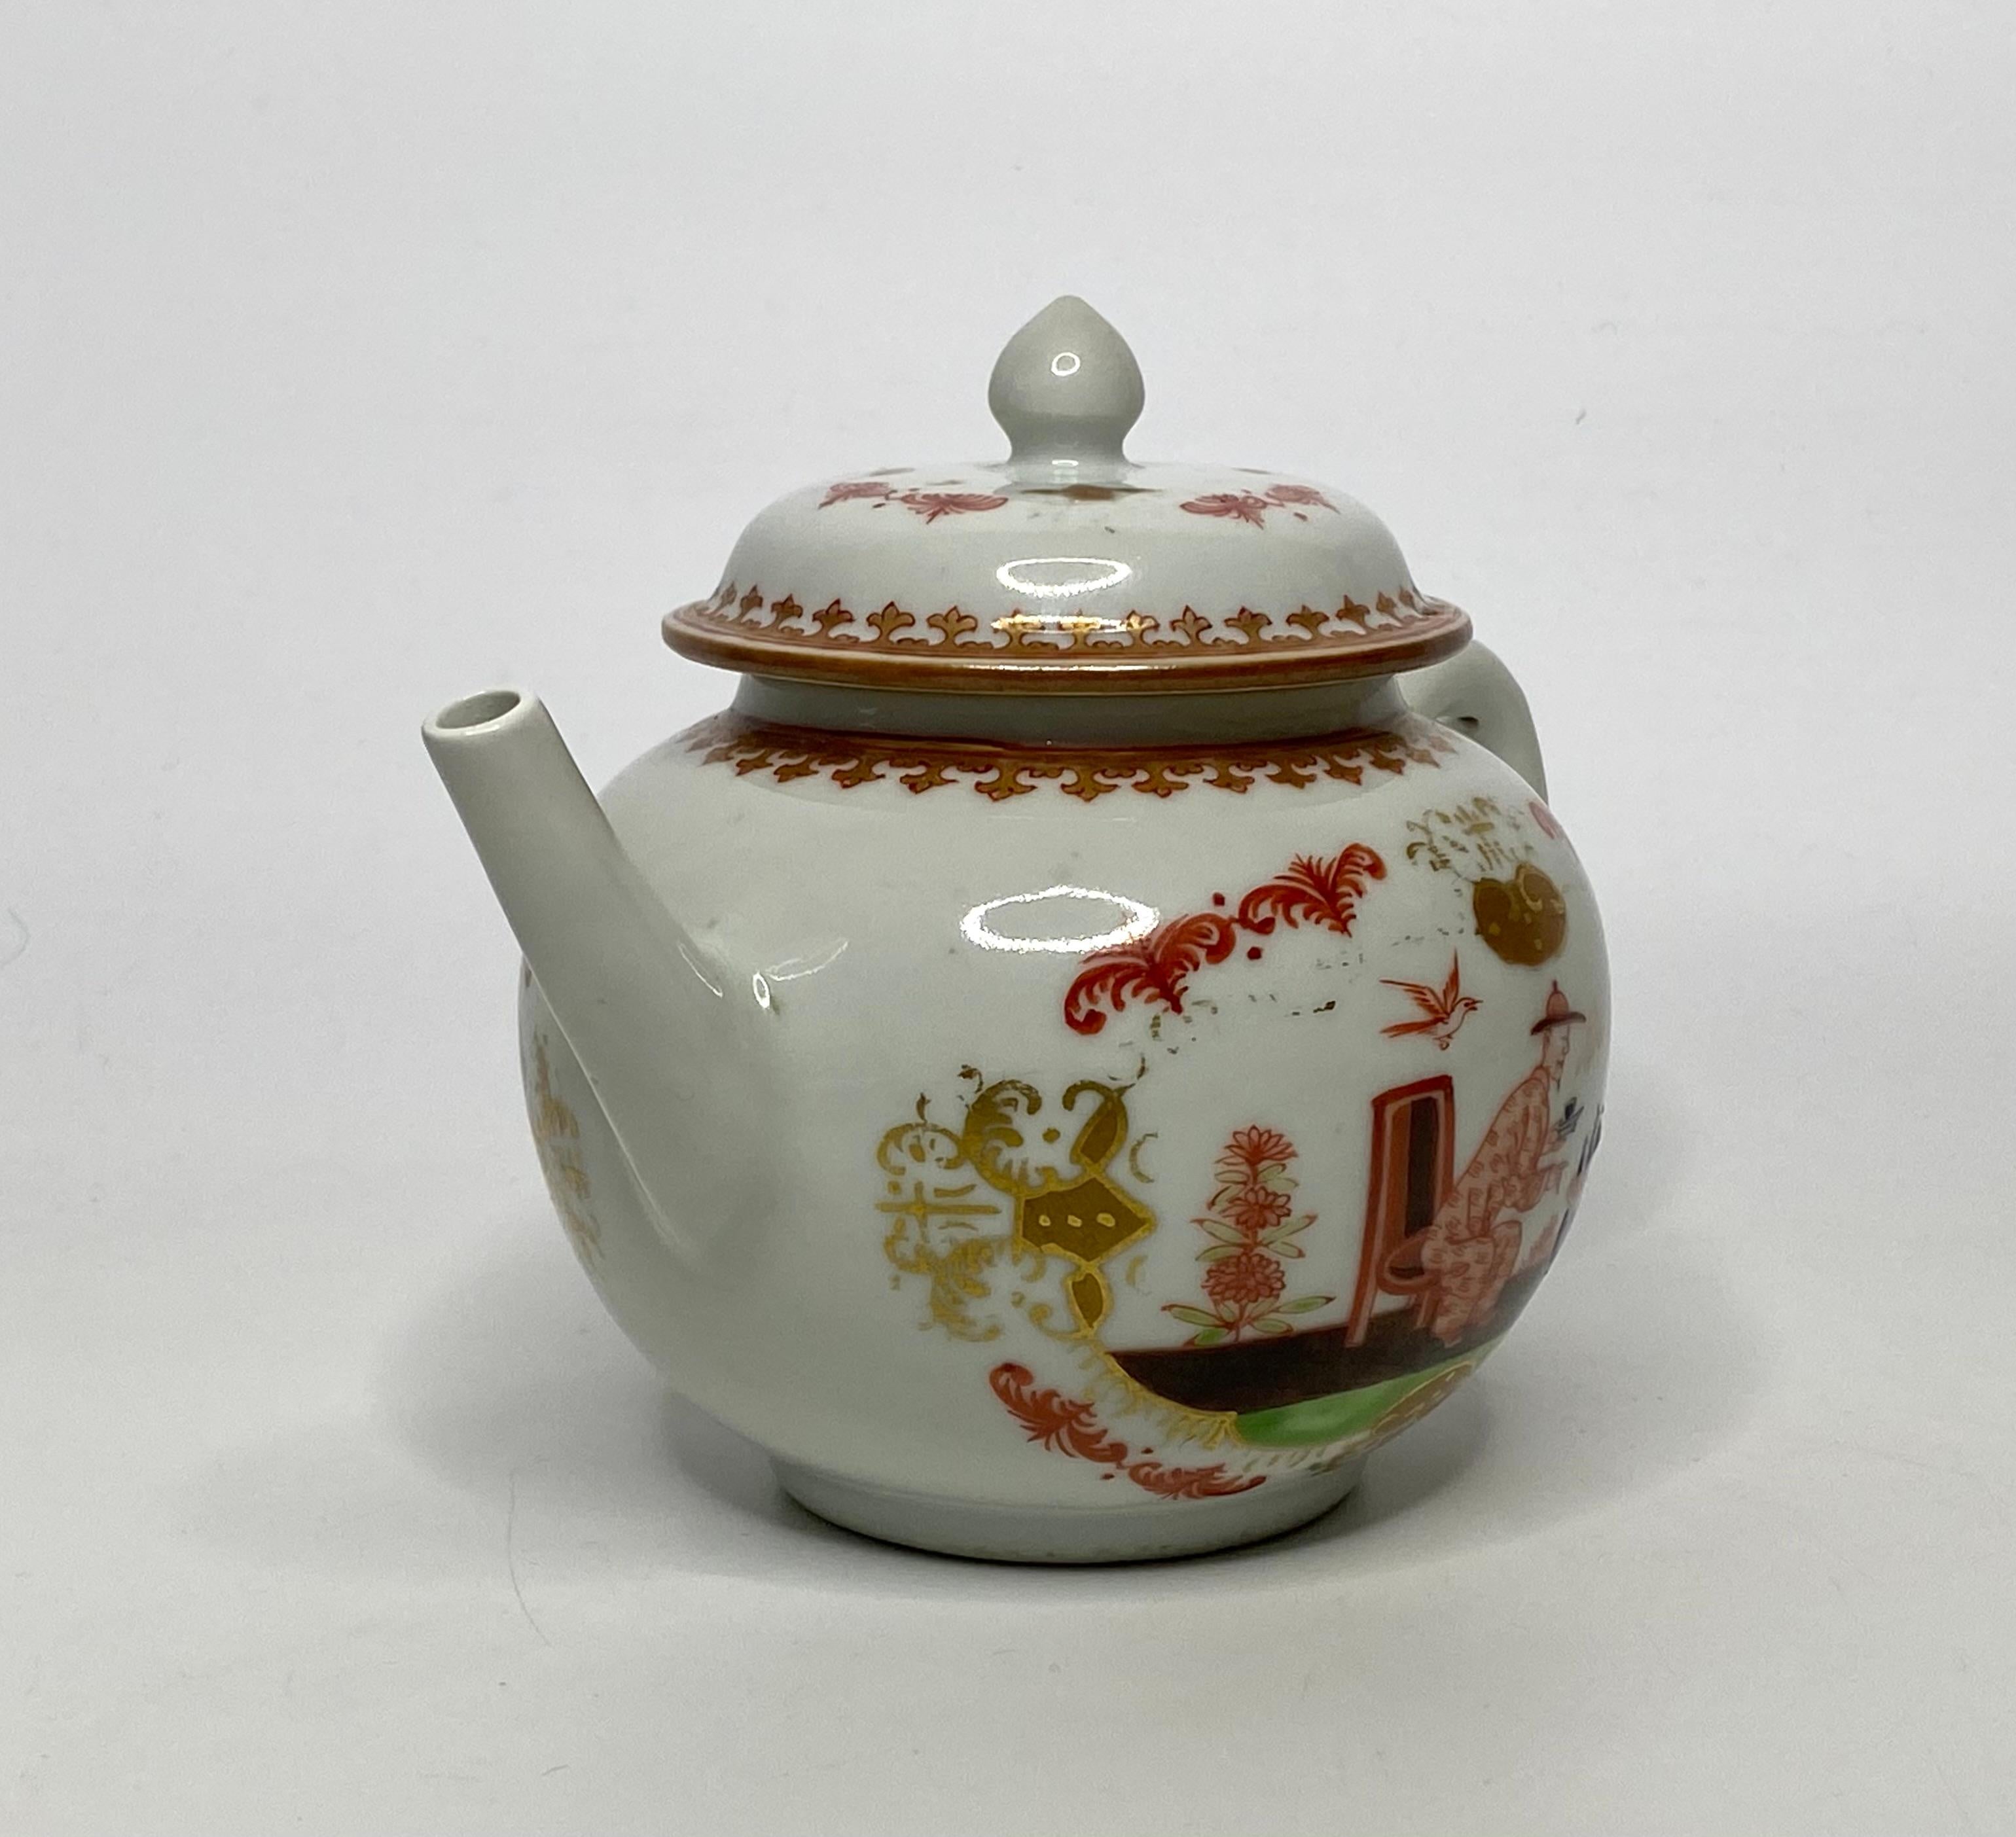 Chinesische Porzellan-Teekanne mit Deckel, um 1750, Qianlong-Periode. Die kugelförmige Teekanne, bemalt nach einer Vorlage aus Meissener Porzellan, in der Art von J.G. Horoldt, mit einer Chinoiserie-Szene eines sitzenden Mannes, der vor einem Tisch